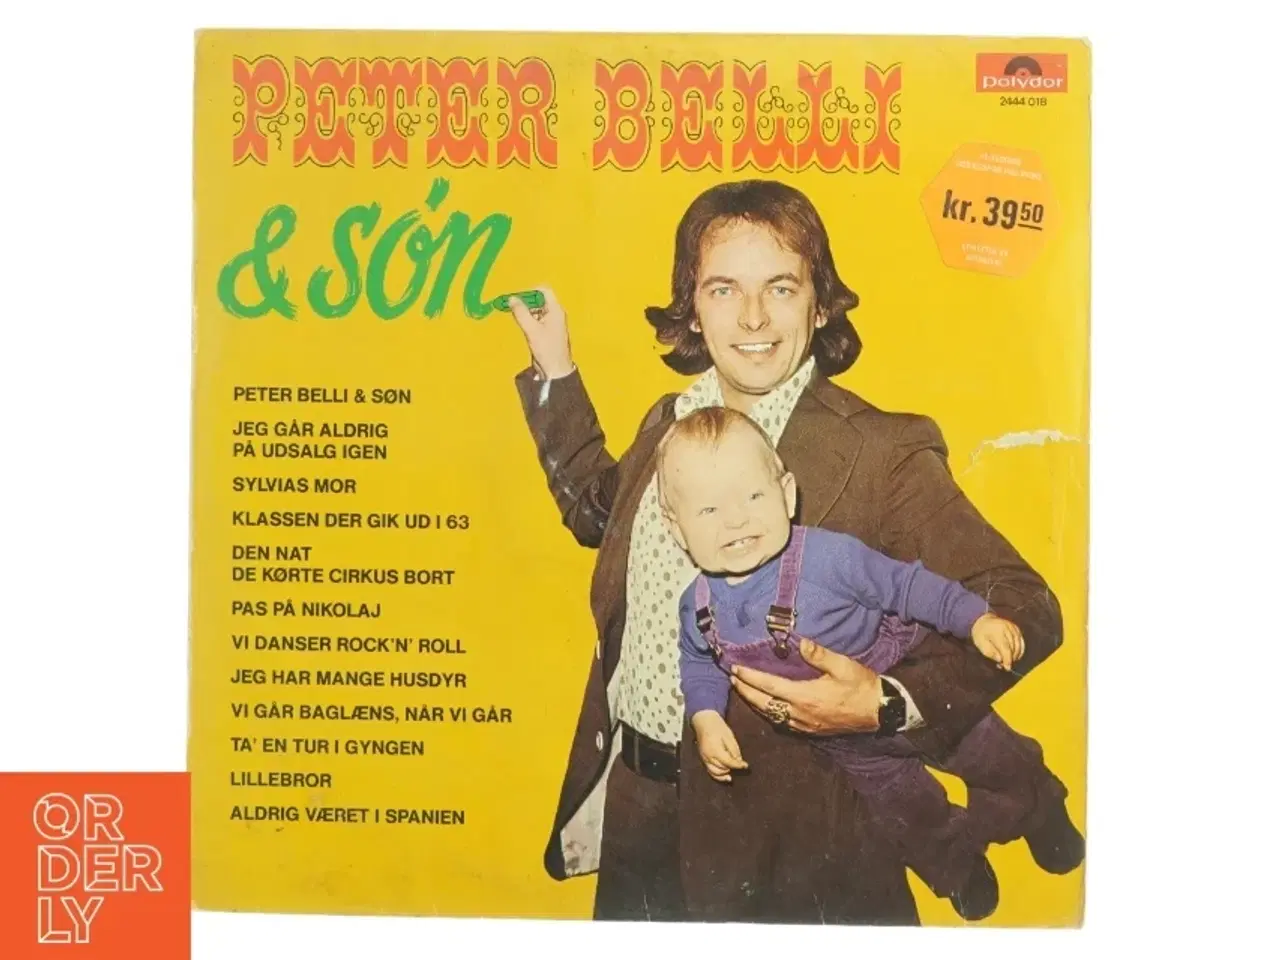 Billede 1 - Peter Belli & Søn - Dansk Rock Compilation Vinyl fra Polydor (str. 31 x 31 cm)